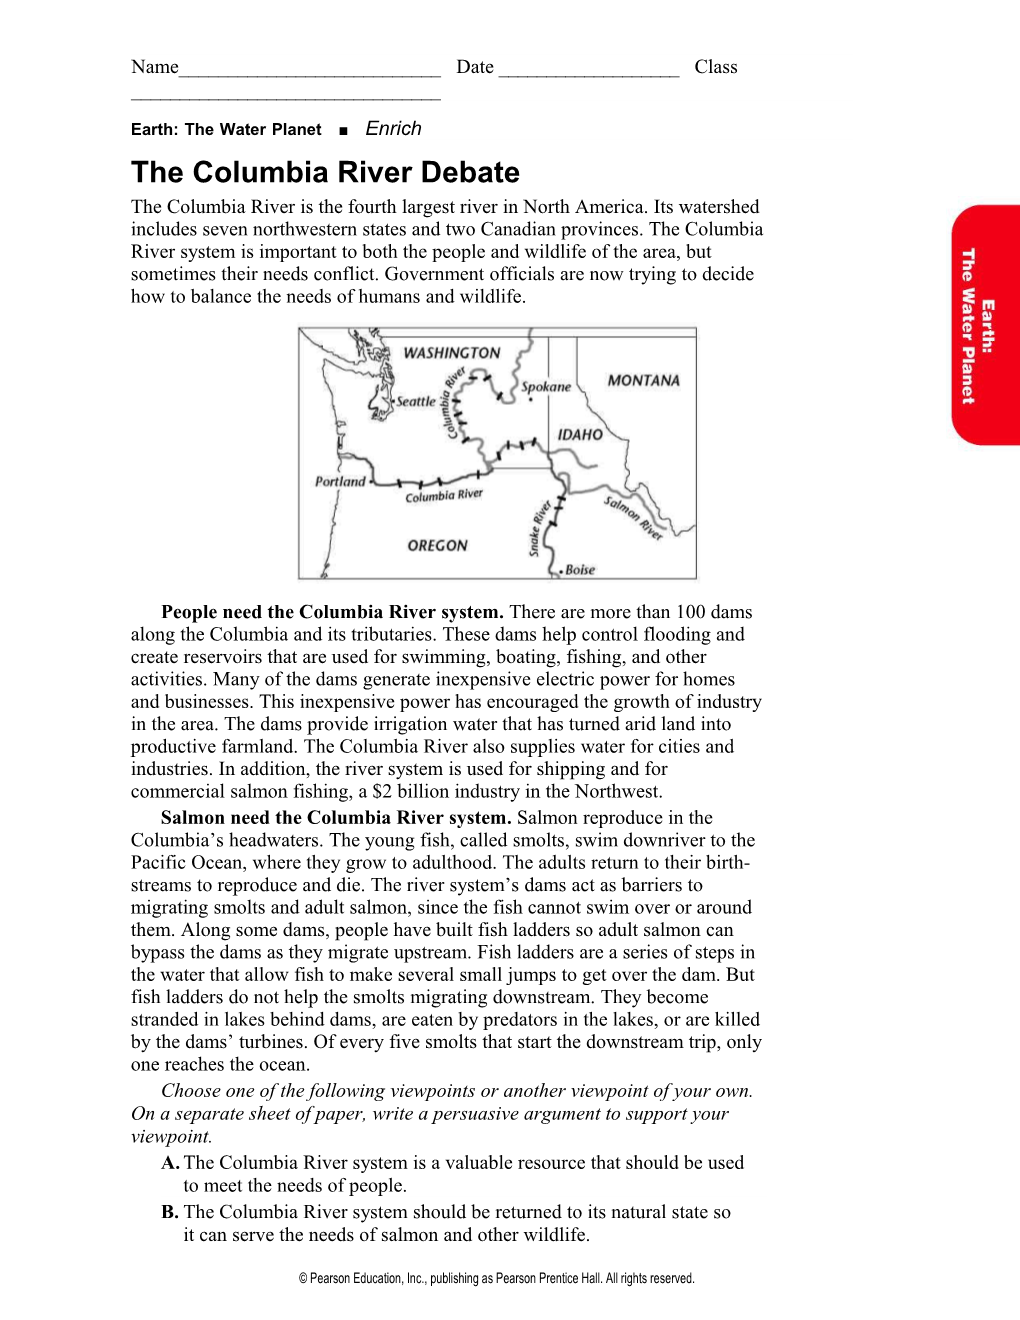 The Columbia River Debate